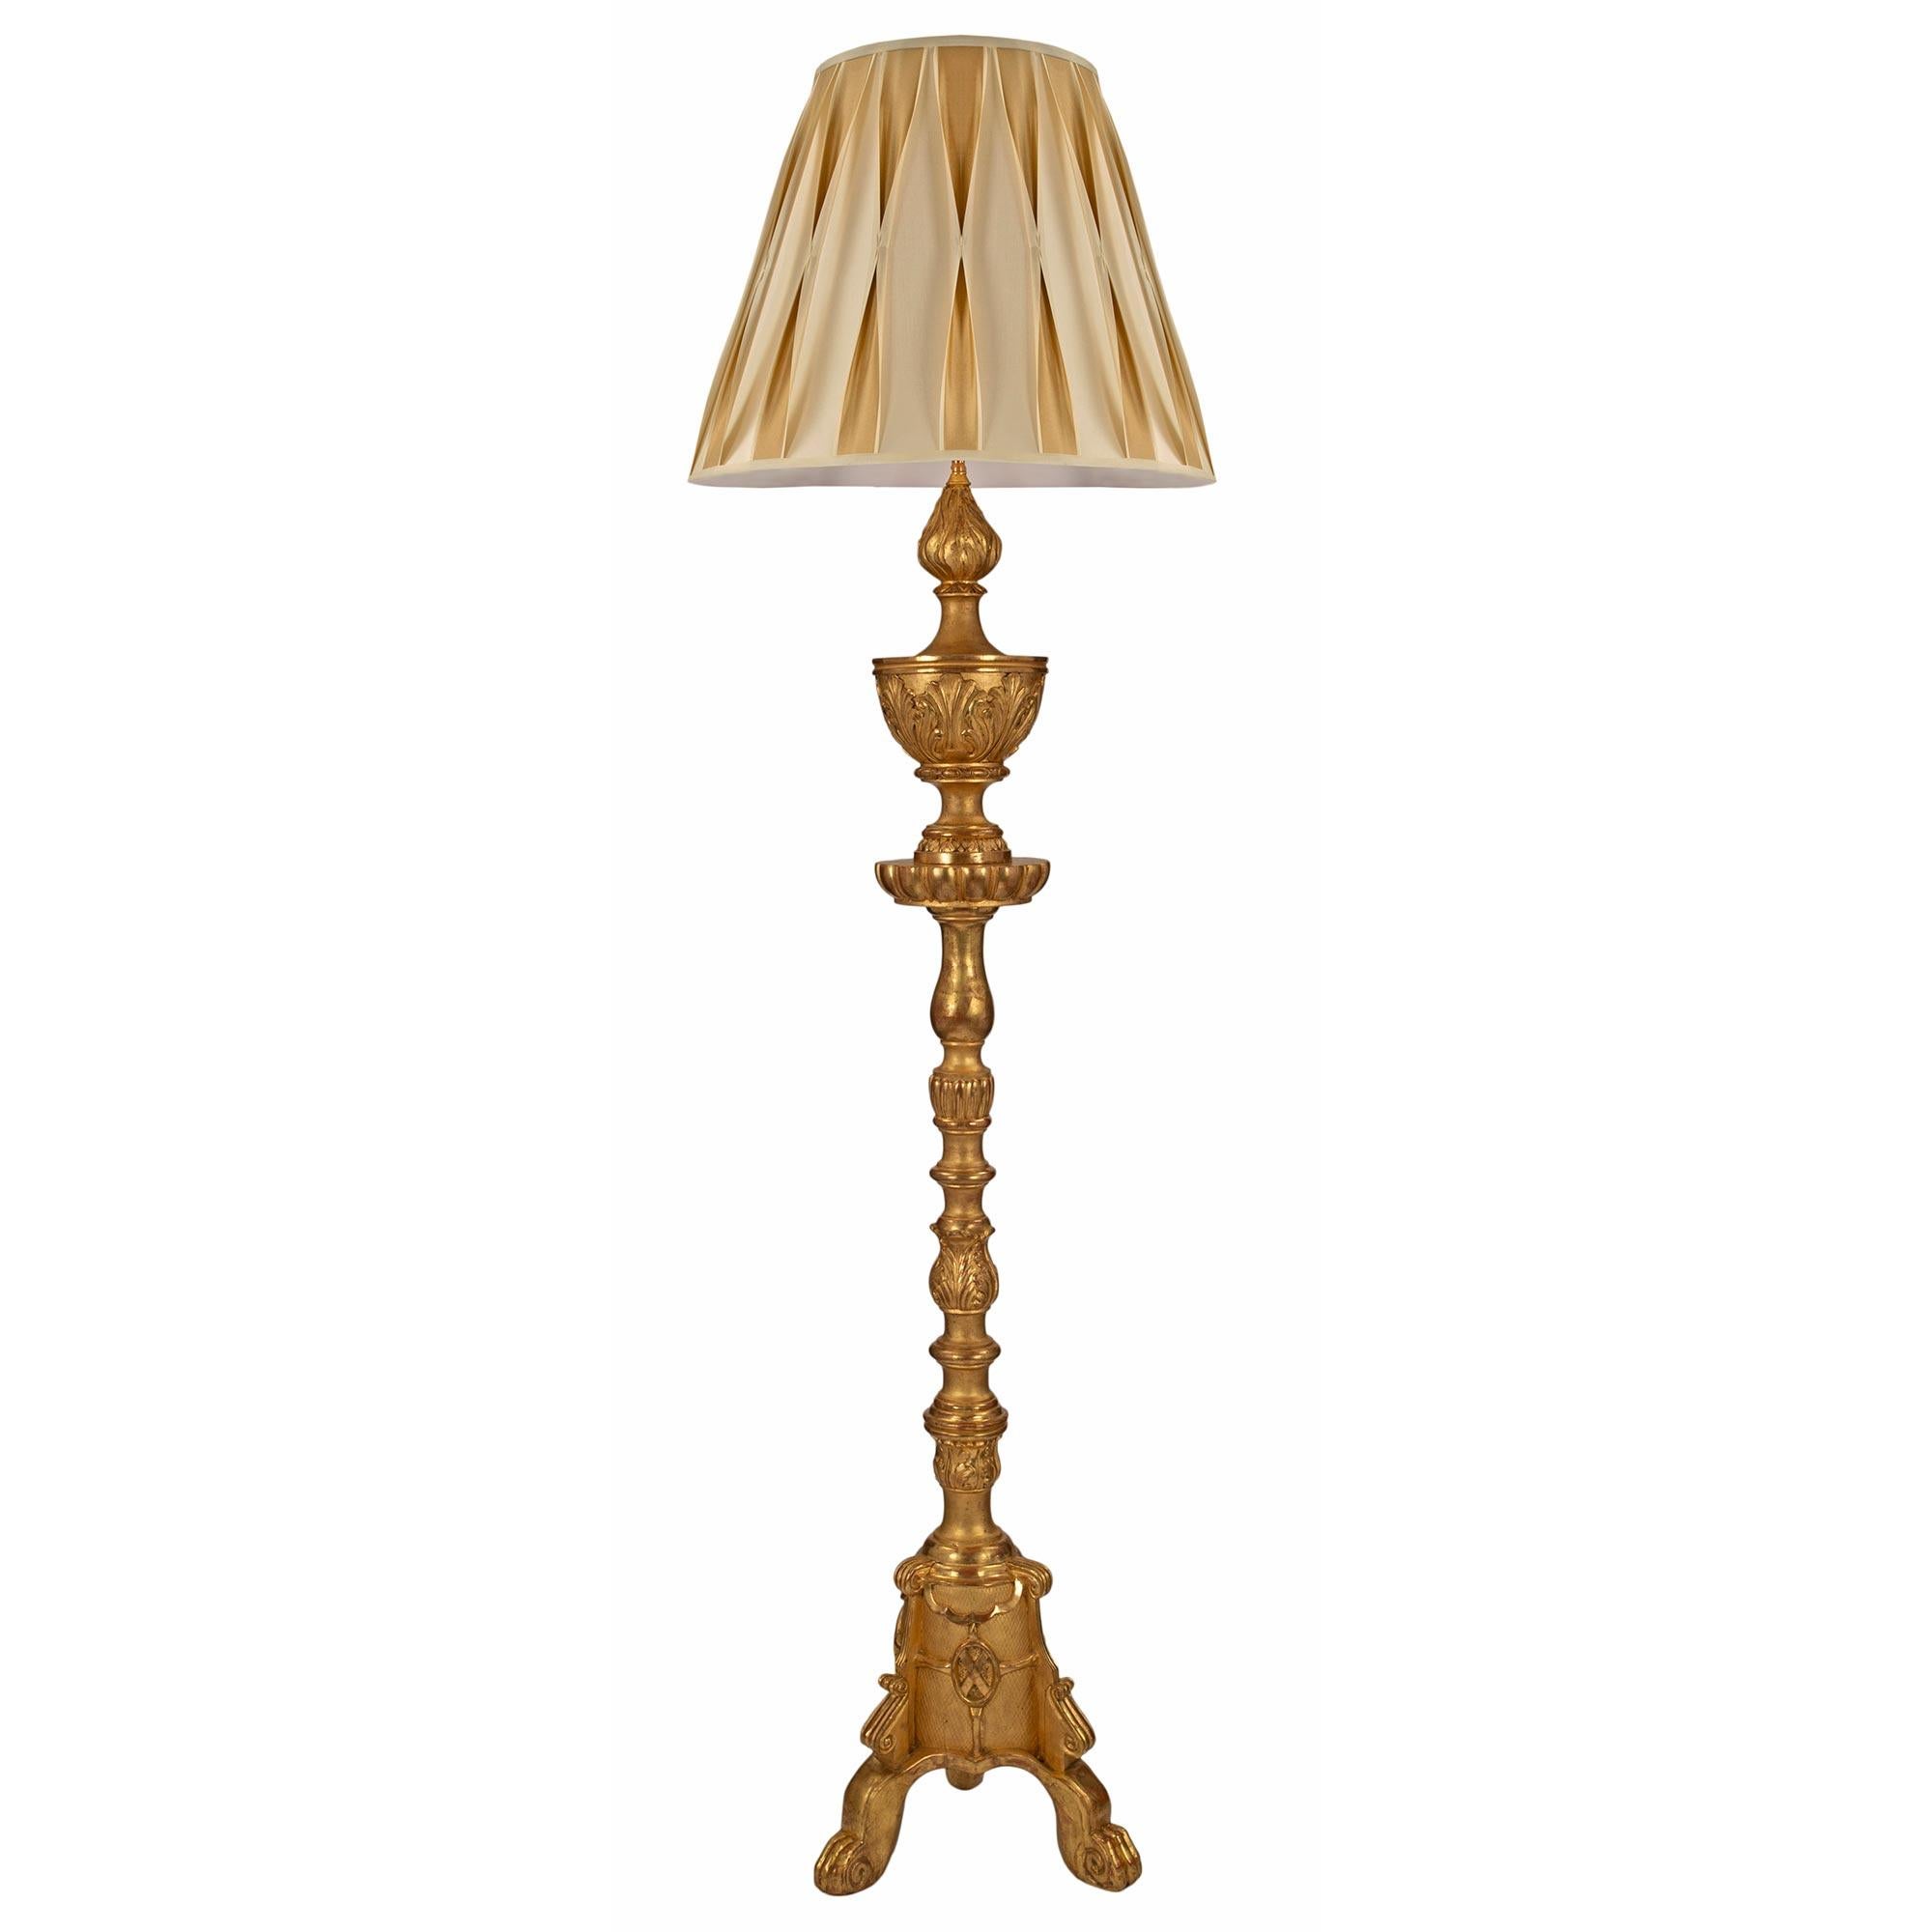 Un très joli lampadaire italien du début du 19ème siècle en bois doré de style Louis XV/XVI. La lampe est surélevée par une base tripode avec des pieds cabriole sous une volute mouchetée. La colonne comporte un écusson central avec un 